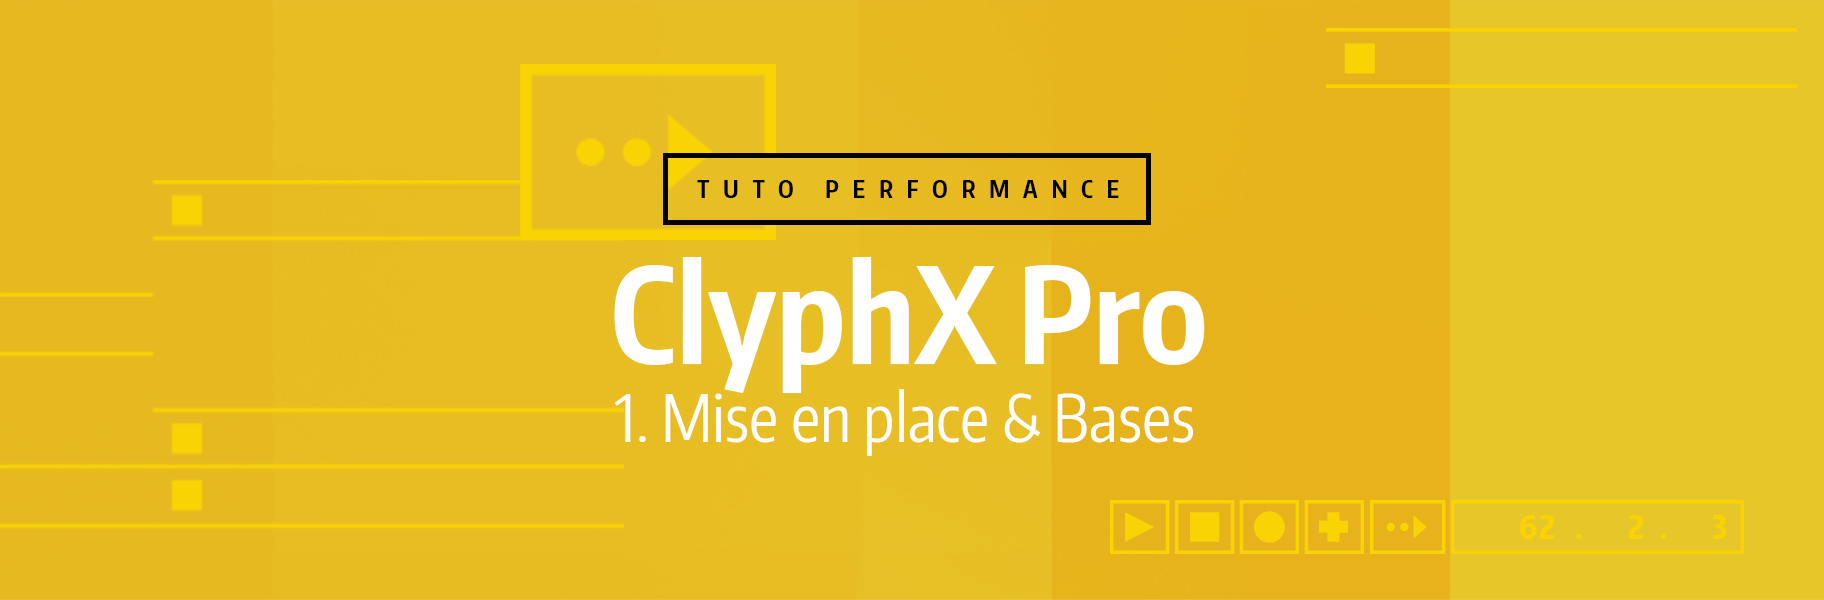 Tutoriel Ableton Live - ClyphX Pro - 1. Mise en place & Bases